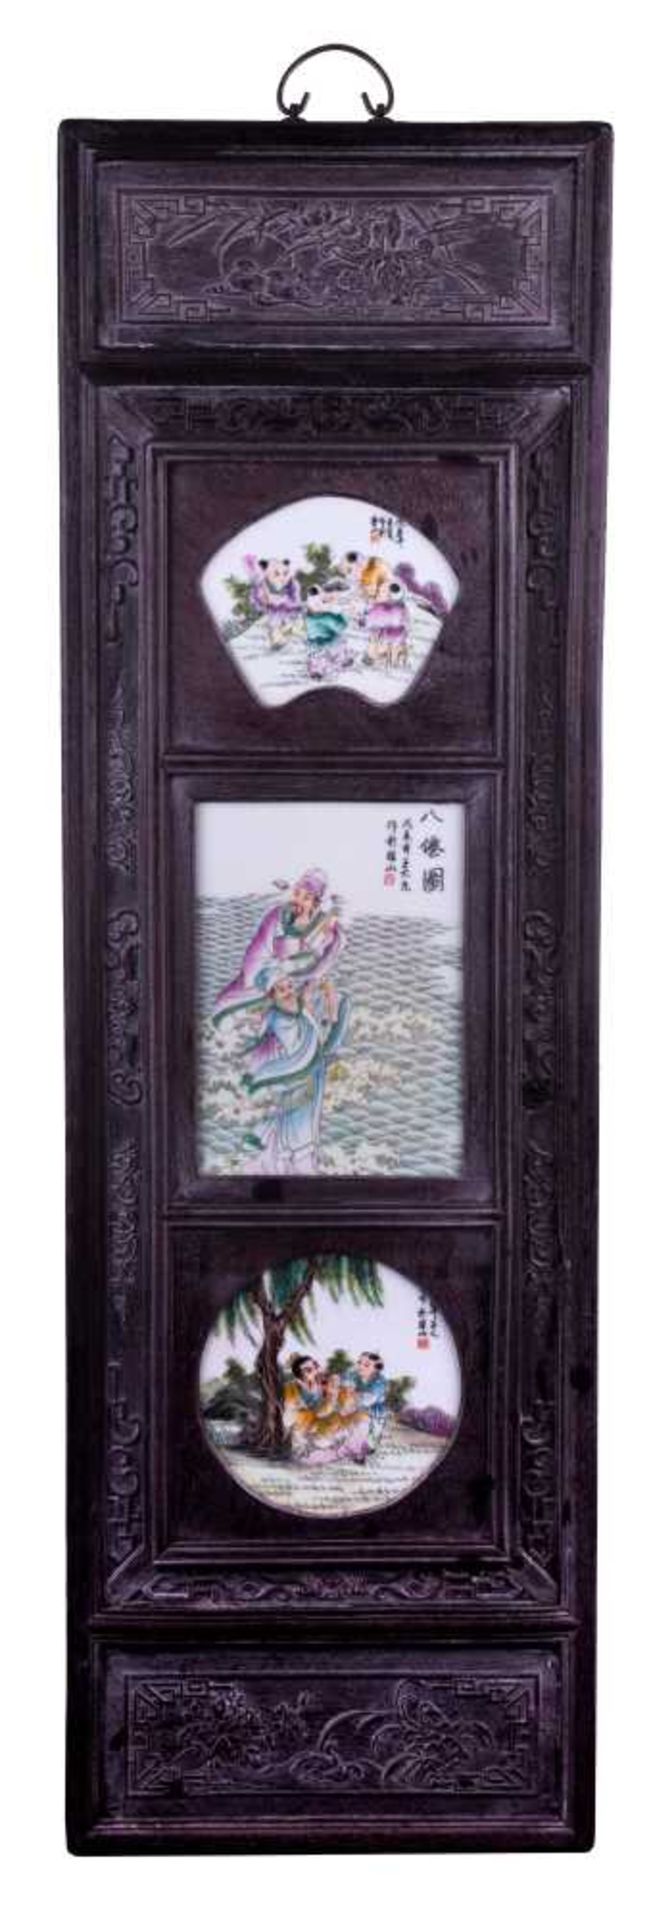 Wandpaneele China 19./20. Jhd. / Wall panel, China 19th/20th century Holz beschnitzt, mit 3 bemalten